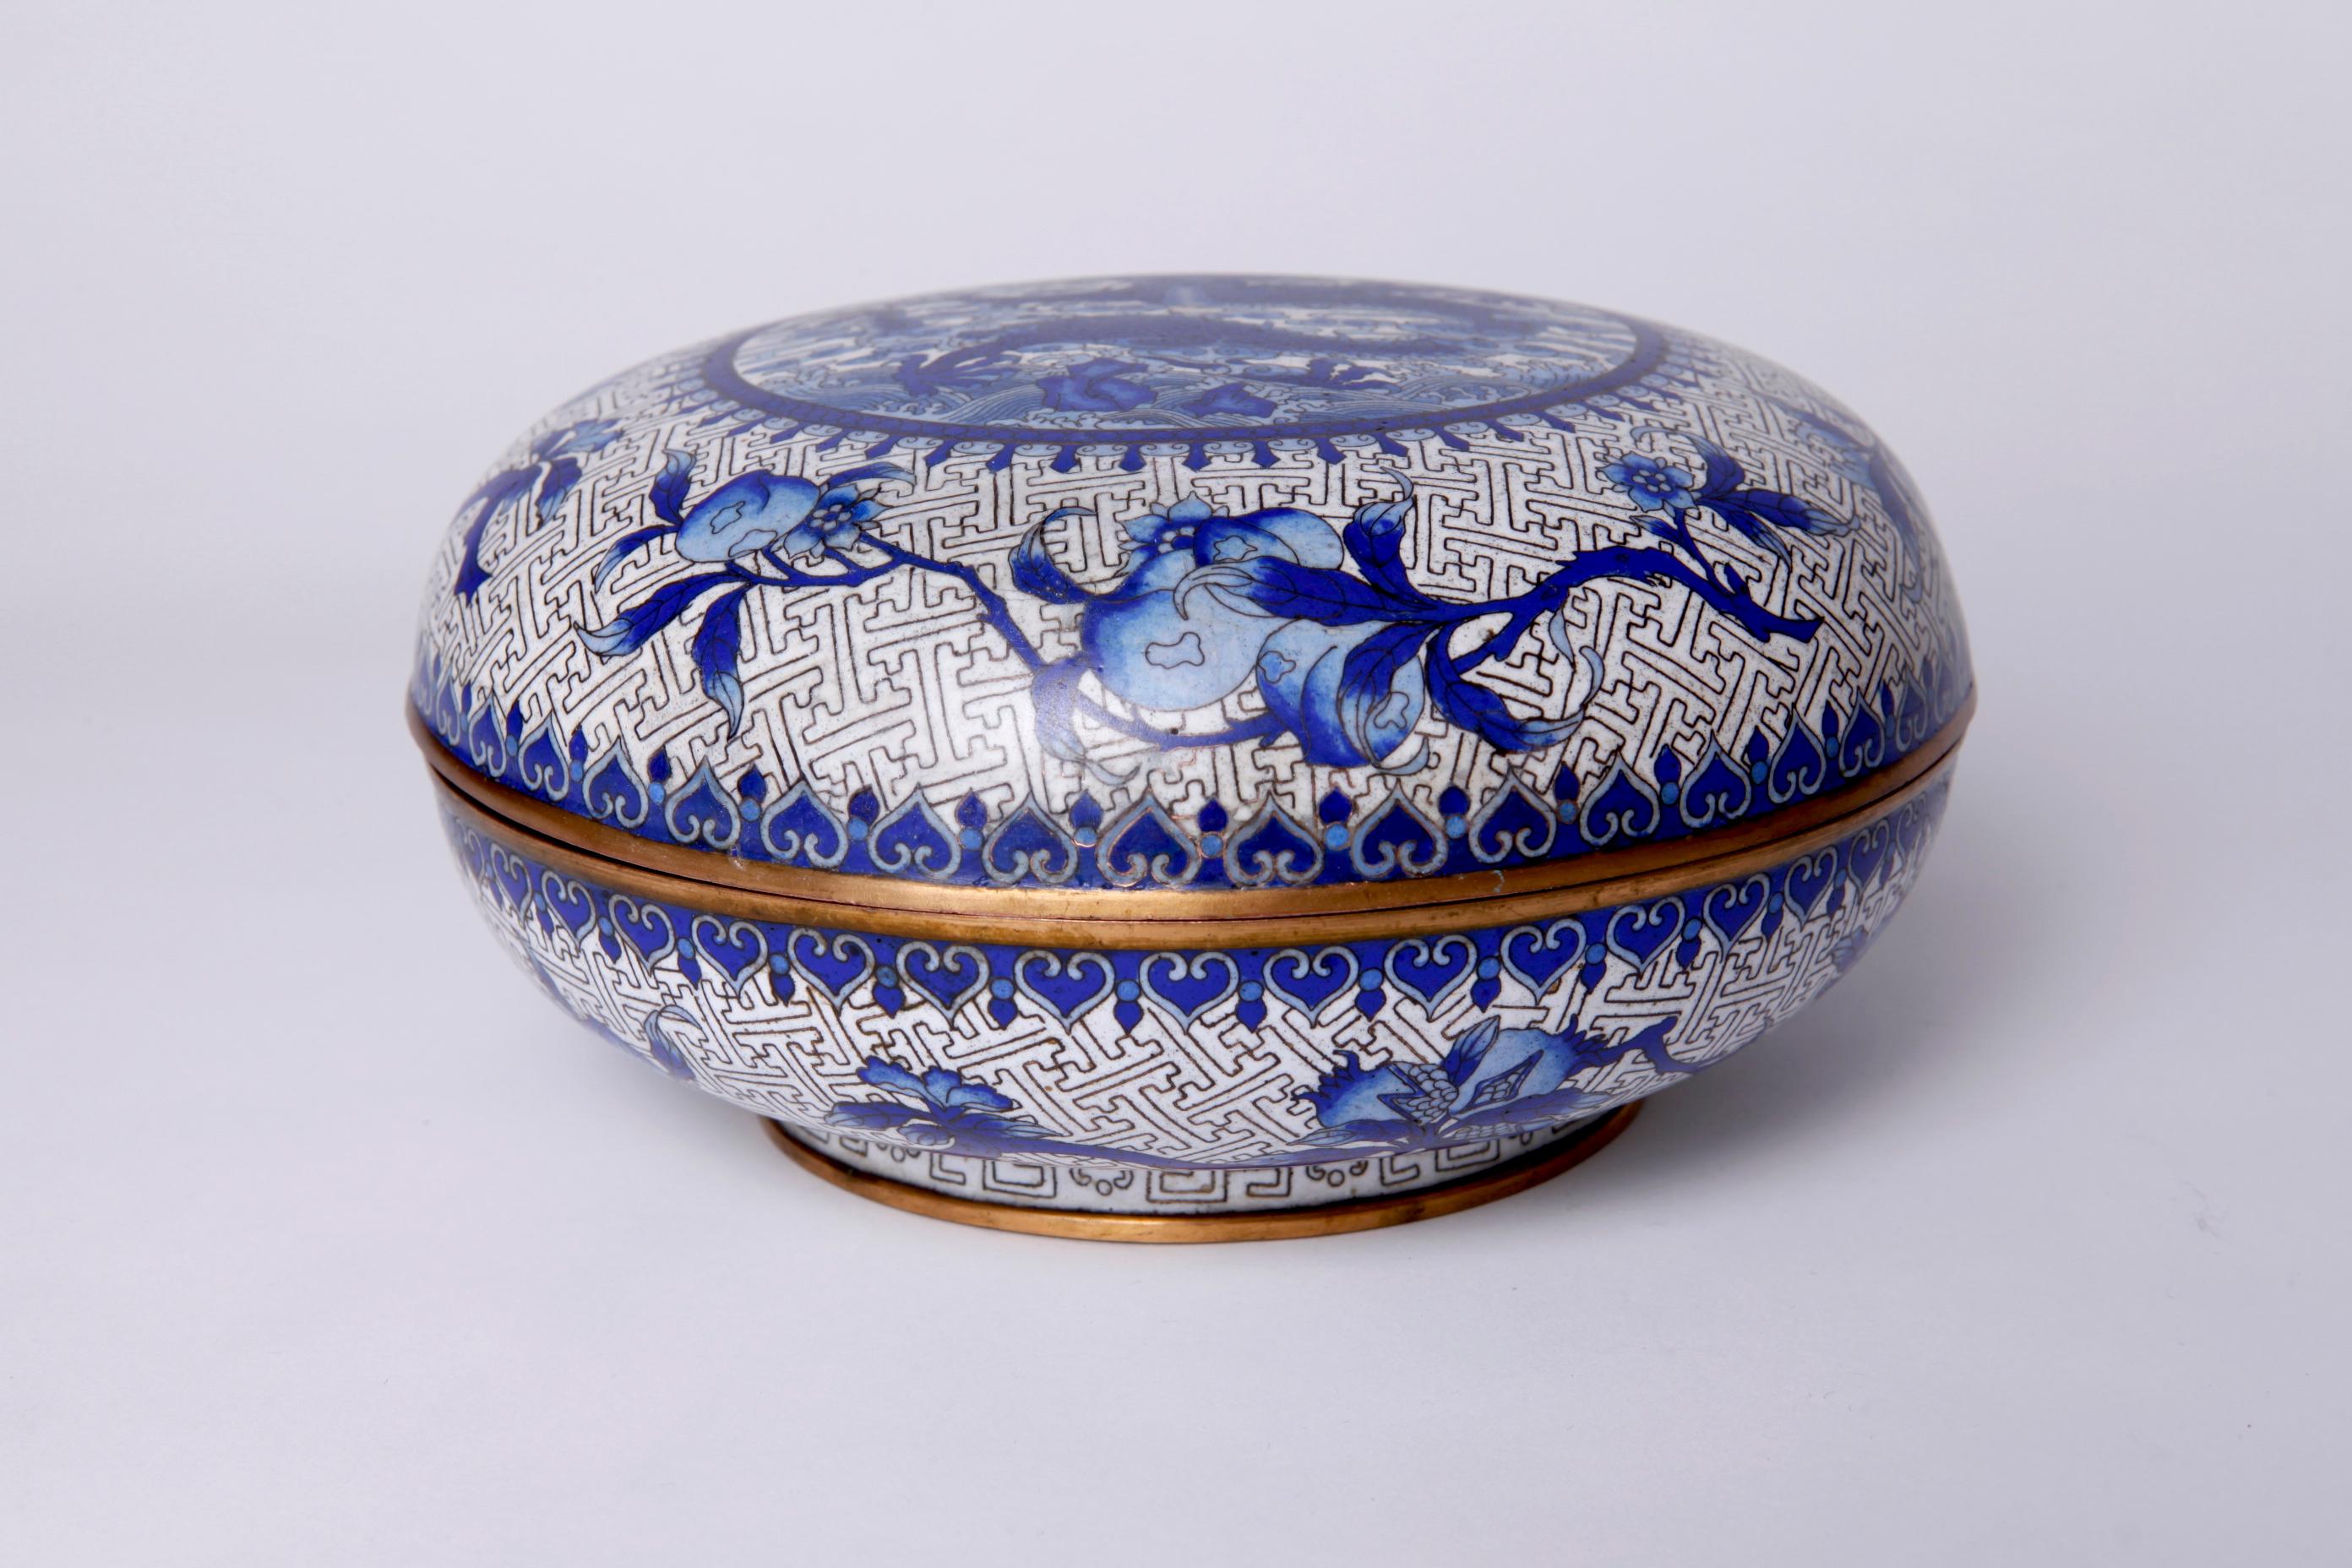 Boîte cloisonnée chinoise
Boîte ronde en émail avec couvercle dans un motif bleu et blanc.
Circa, début du 20e siècle
Mesures : H 5 in. (12,7 cm)

NMA n° 2084